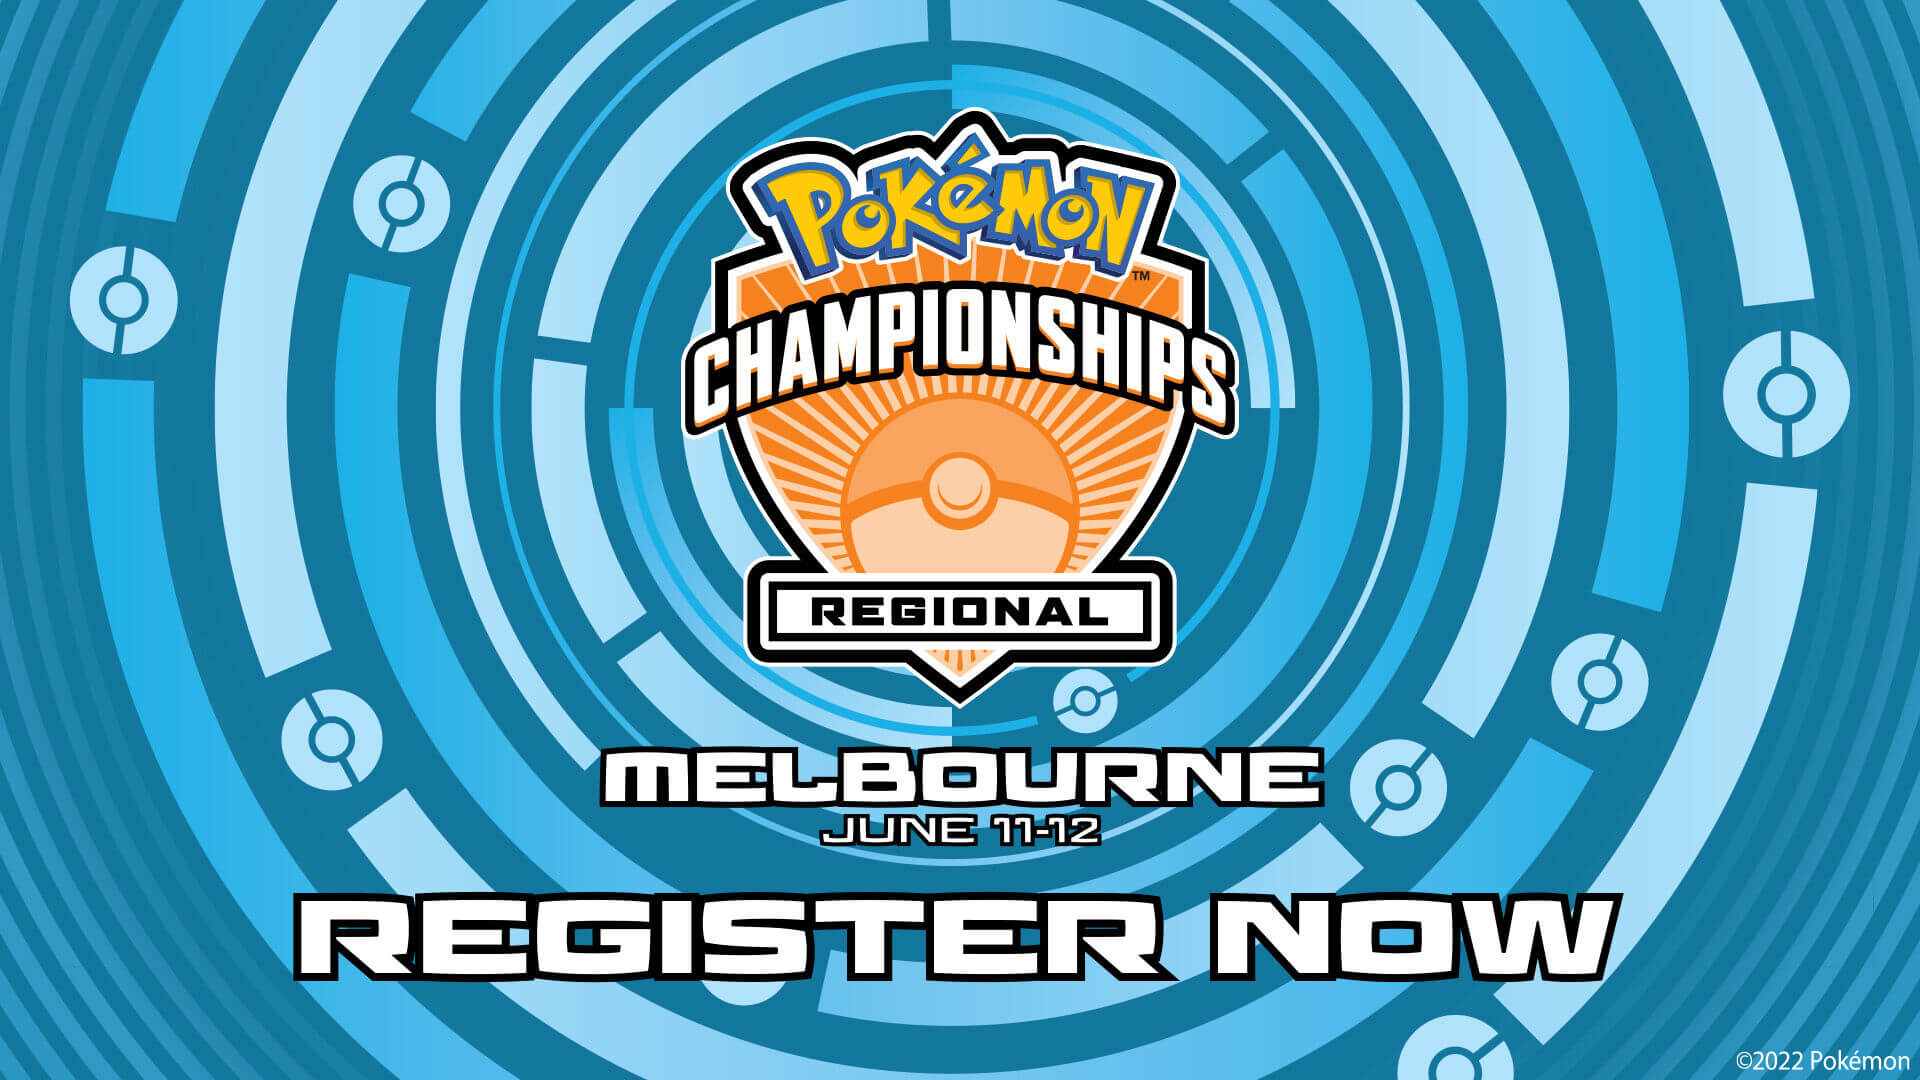 Registration for Melbourne 2022 Regionals Championship!